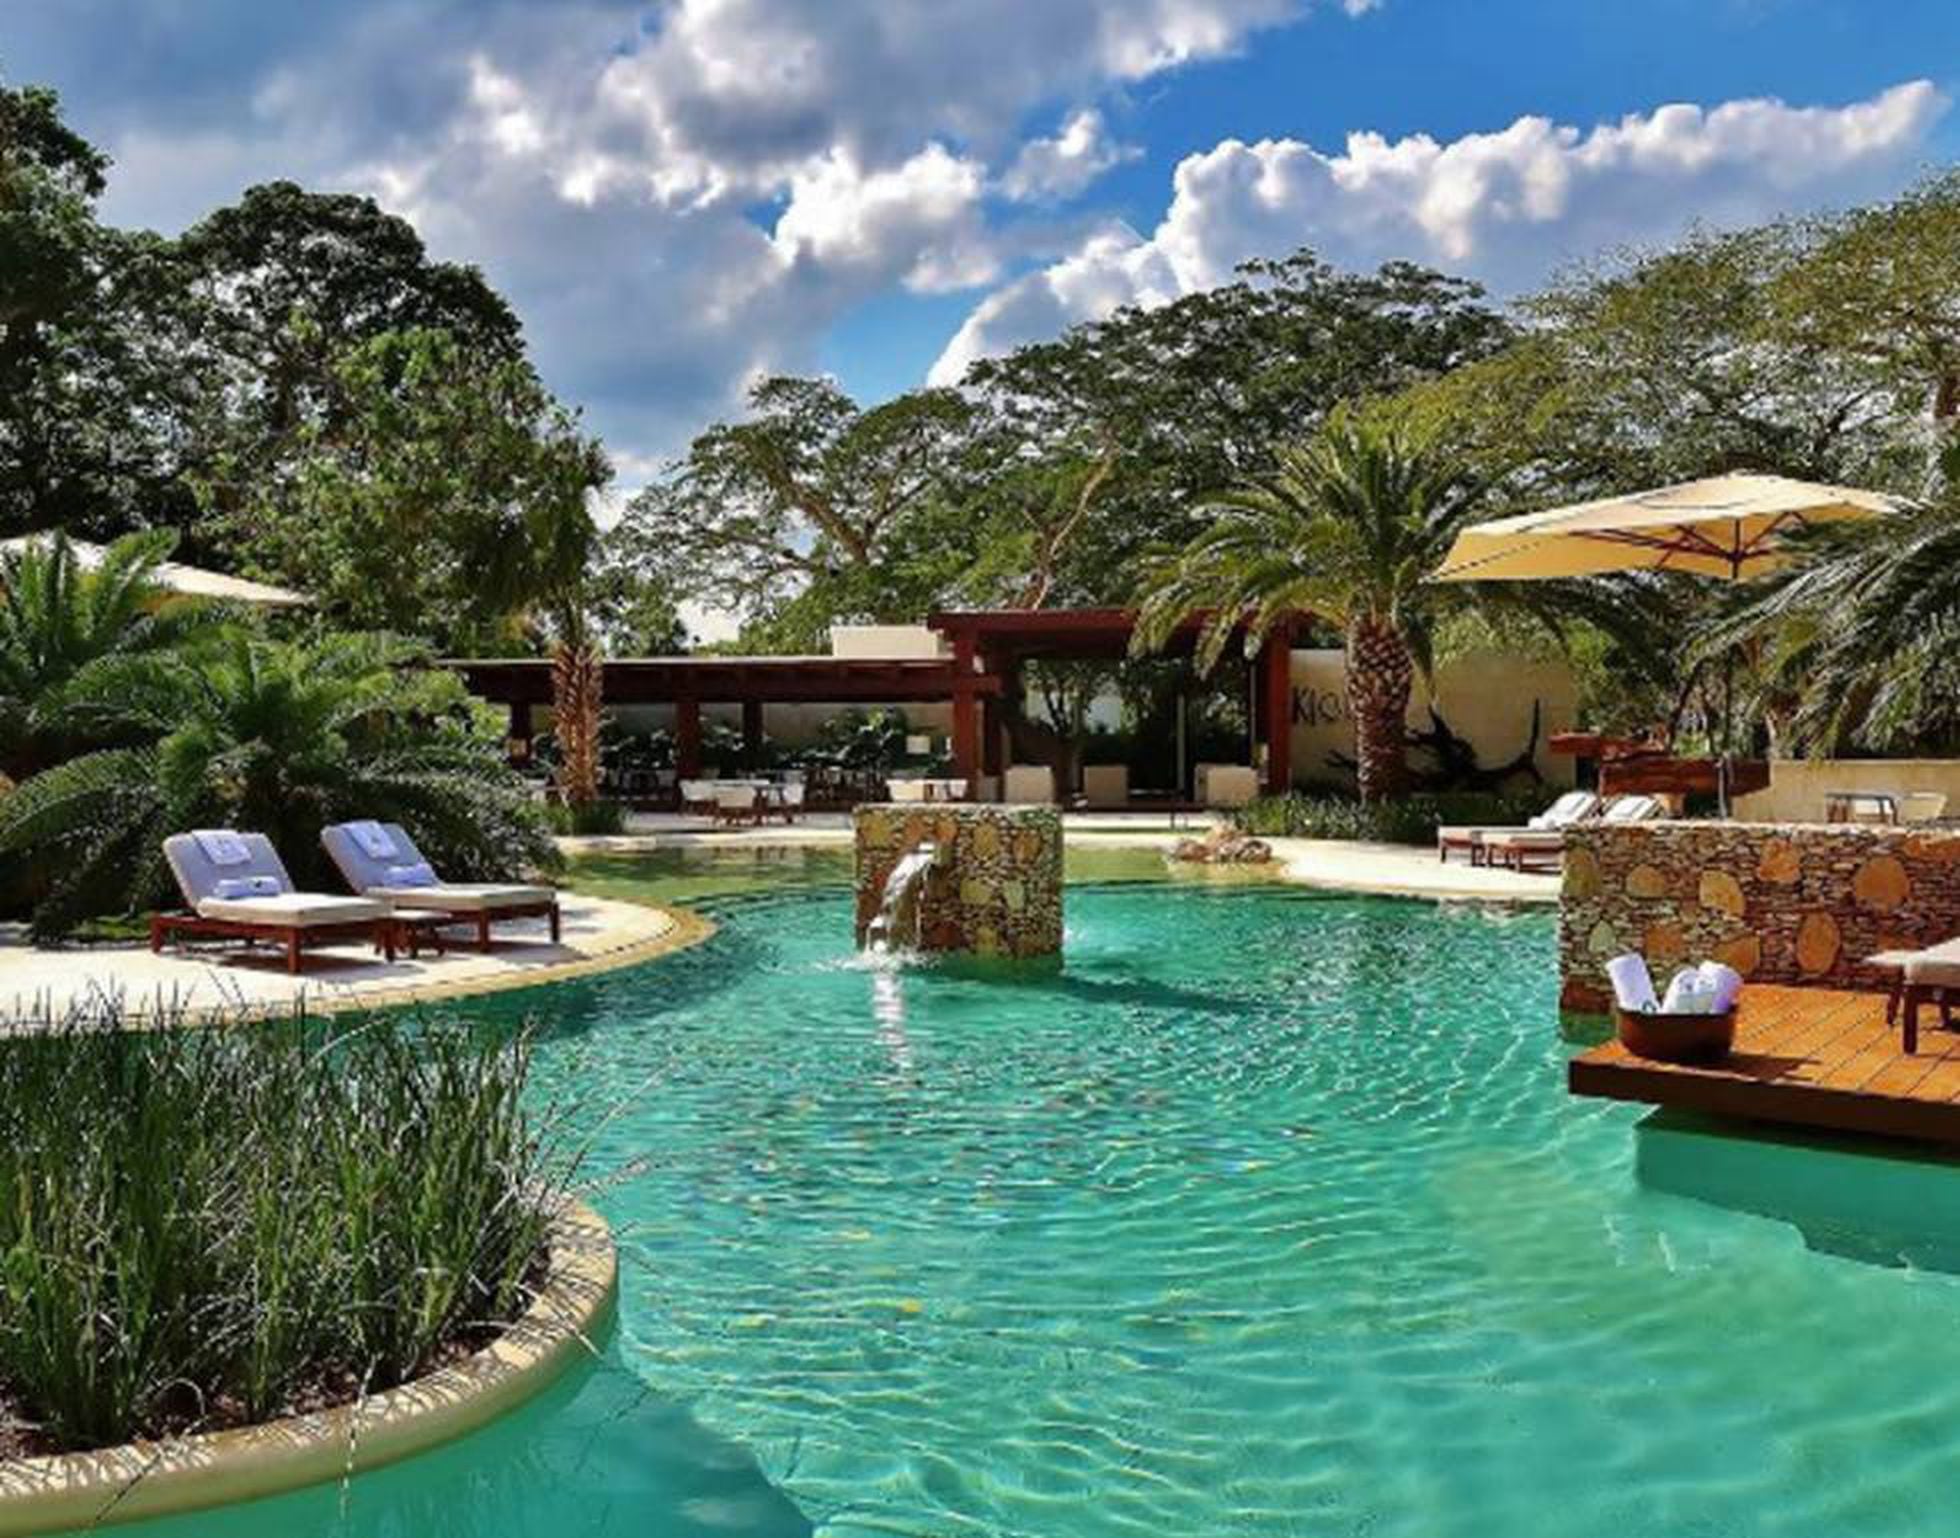 Chablé El mejor hotel del mundo está en la península de Yucatán, según